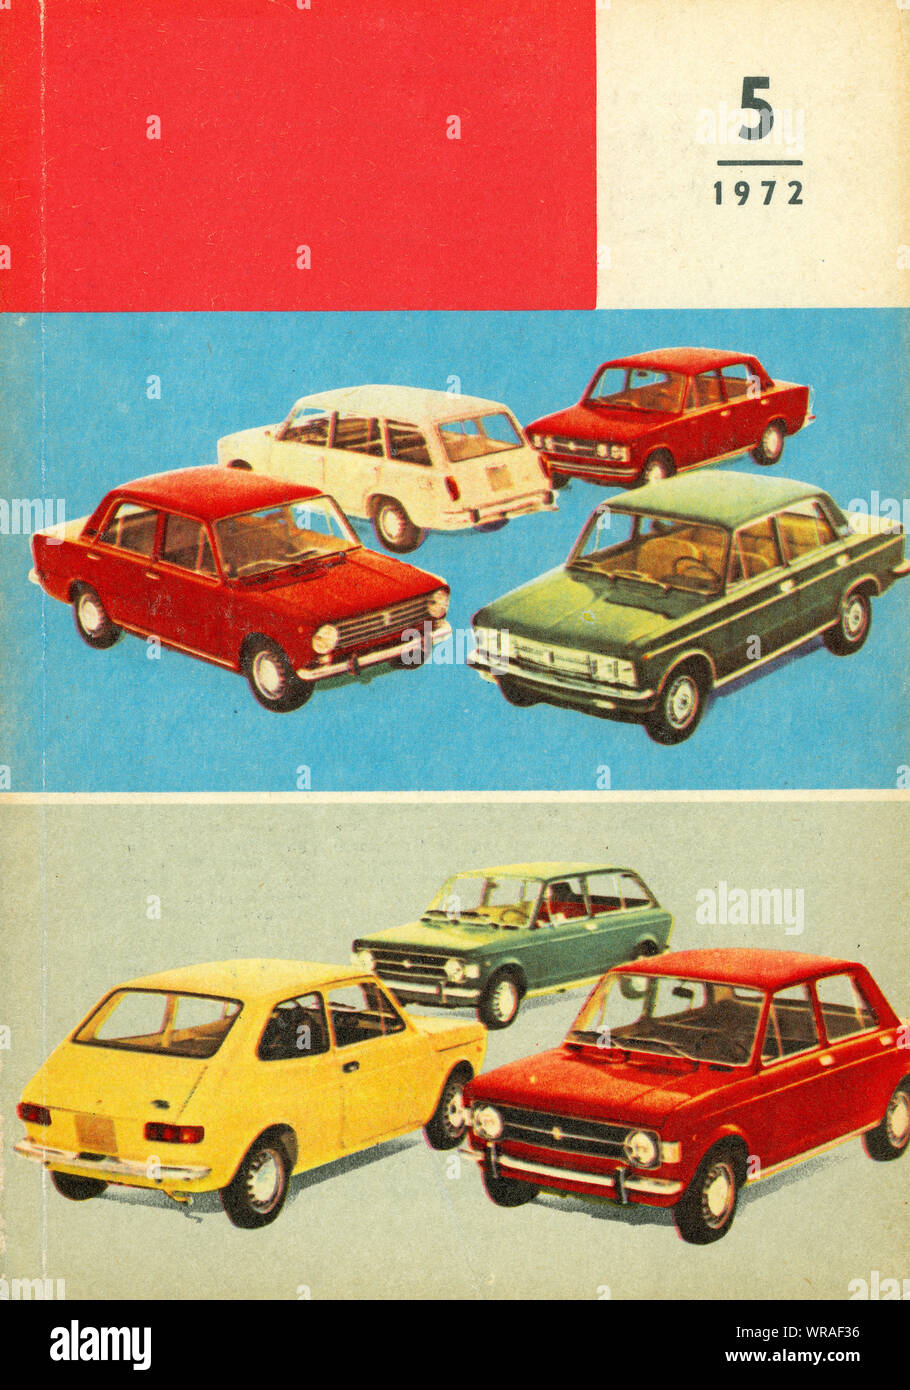 Car models in 1972 Stock Photo